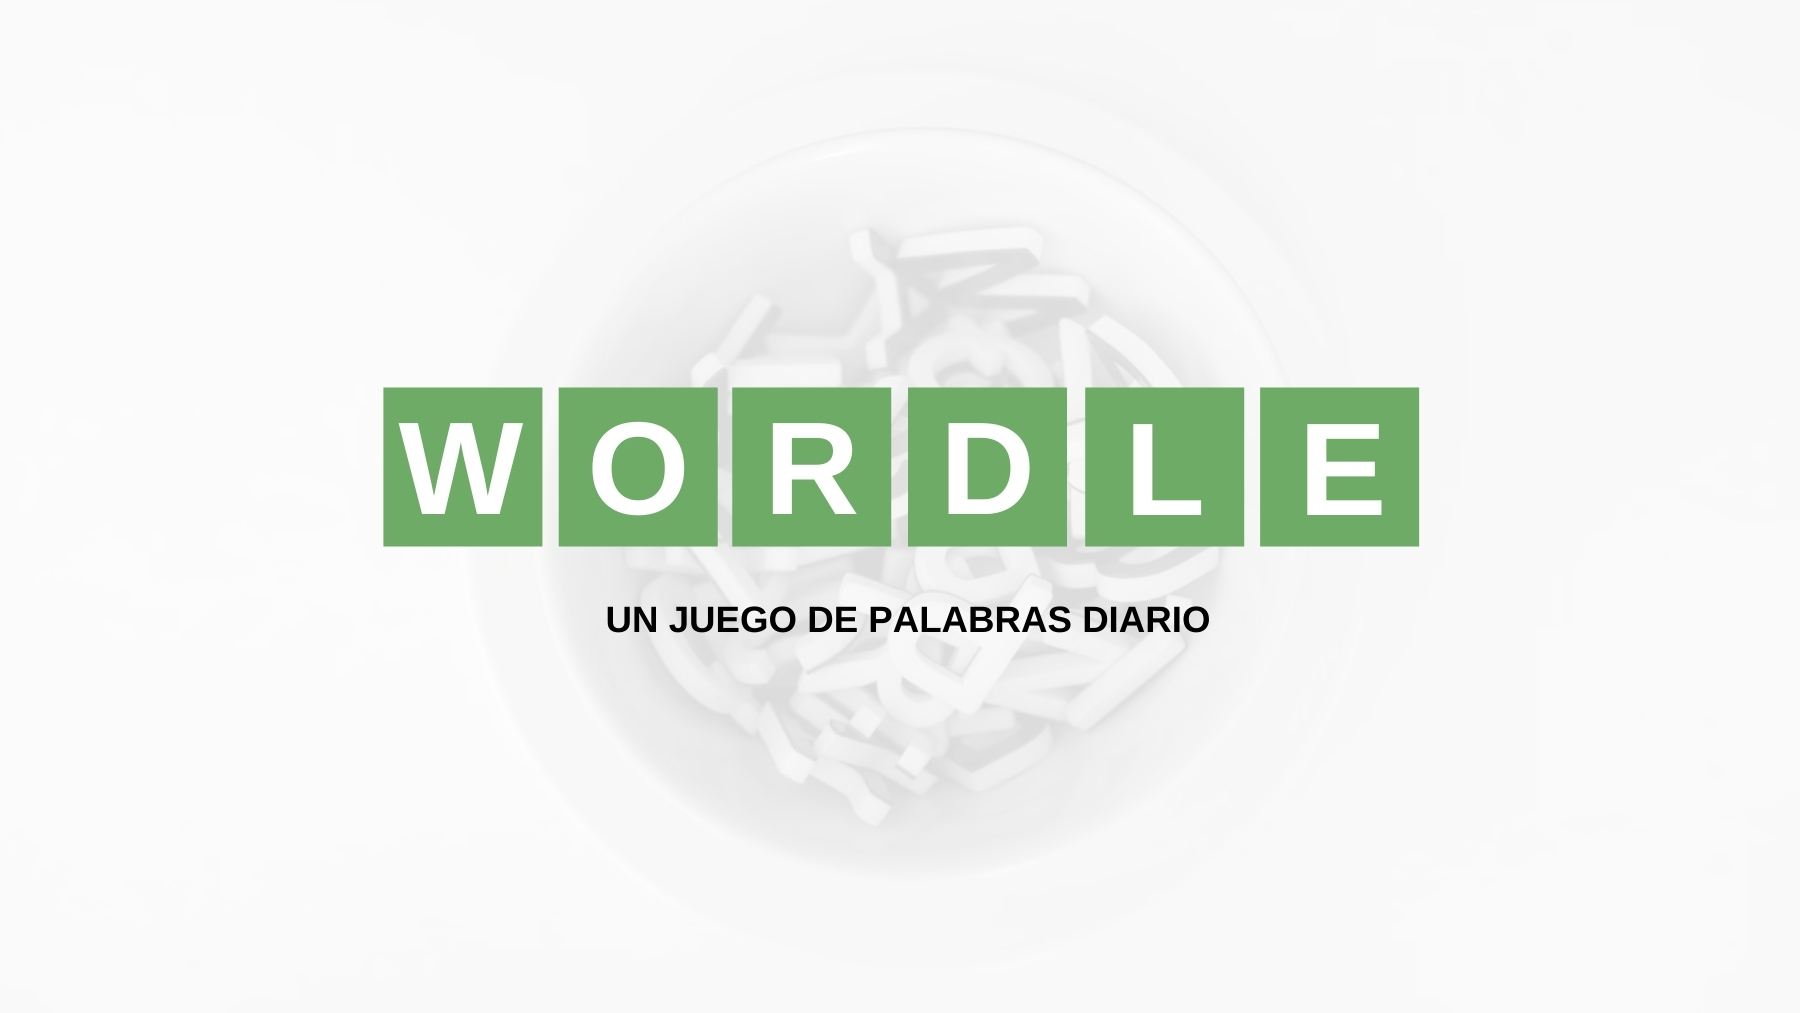 Soluciones y pistas palabra Wordle español, científico y con tildes hoy, viernes 26 de agosto de 2022